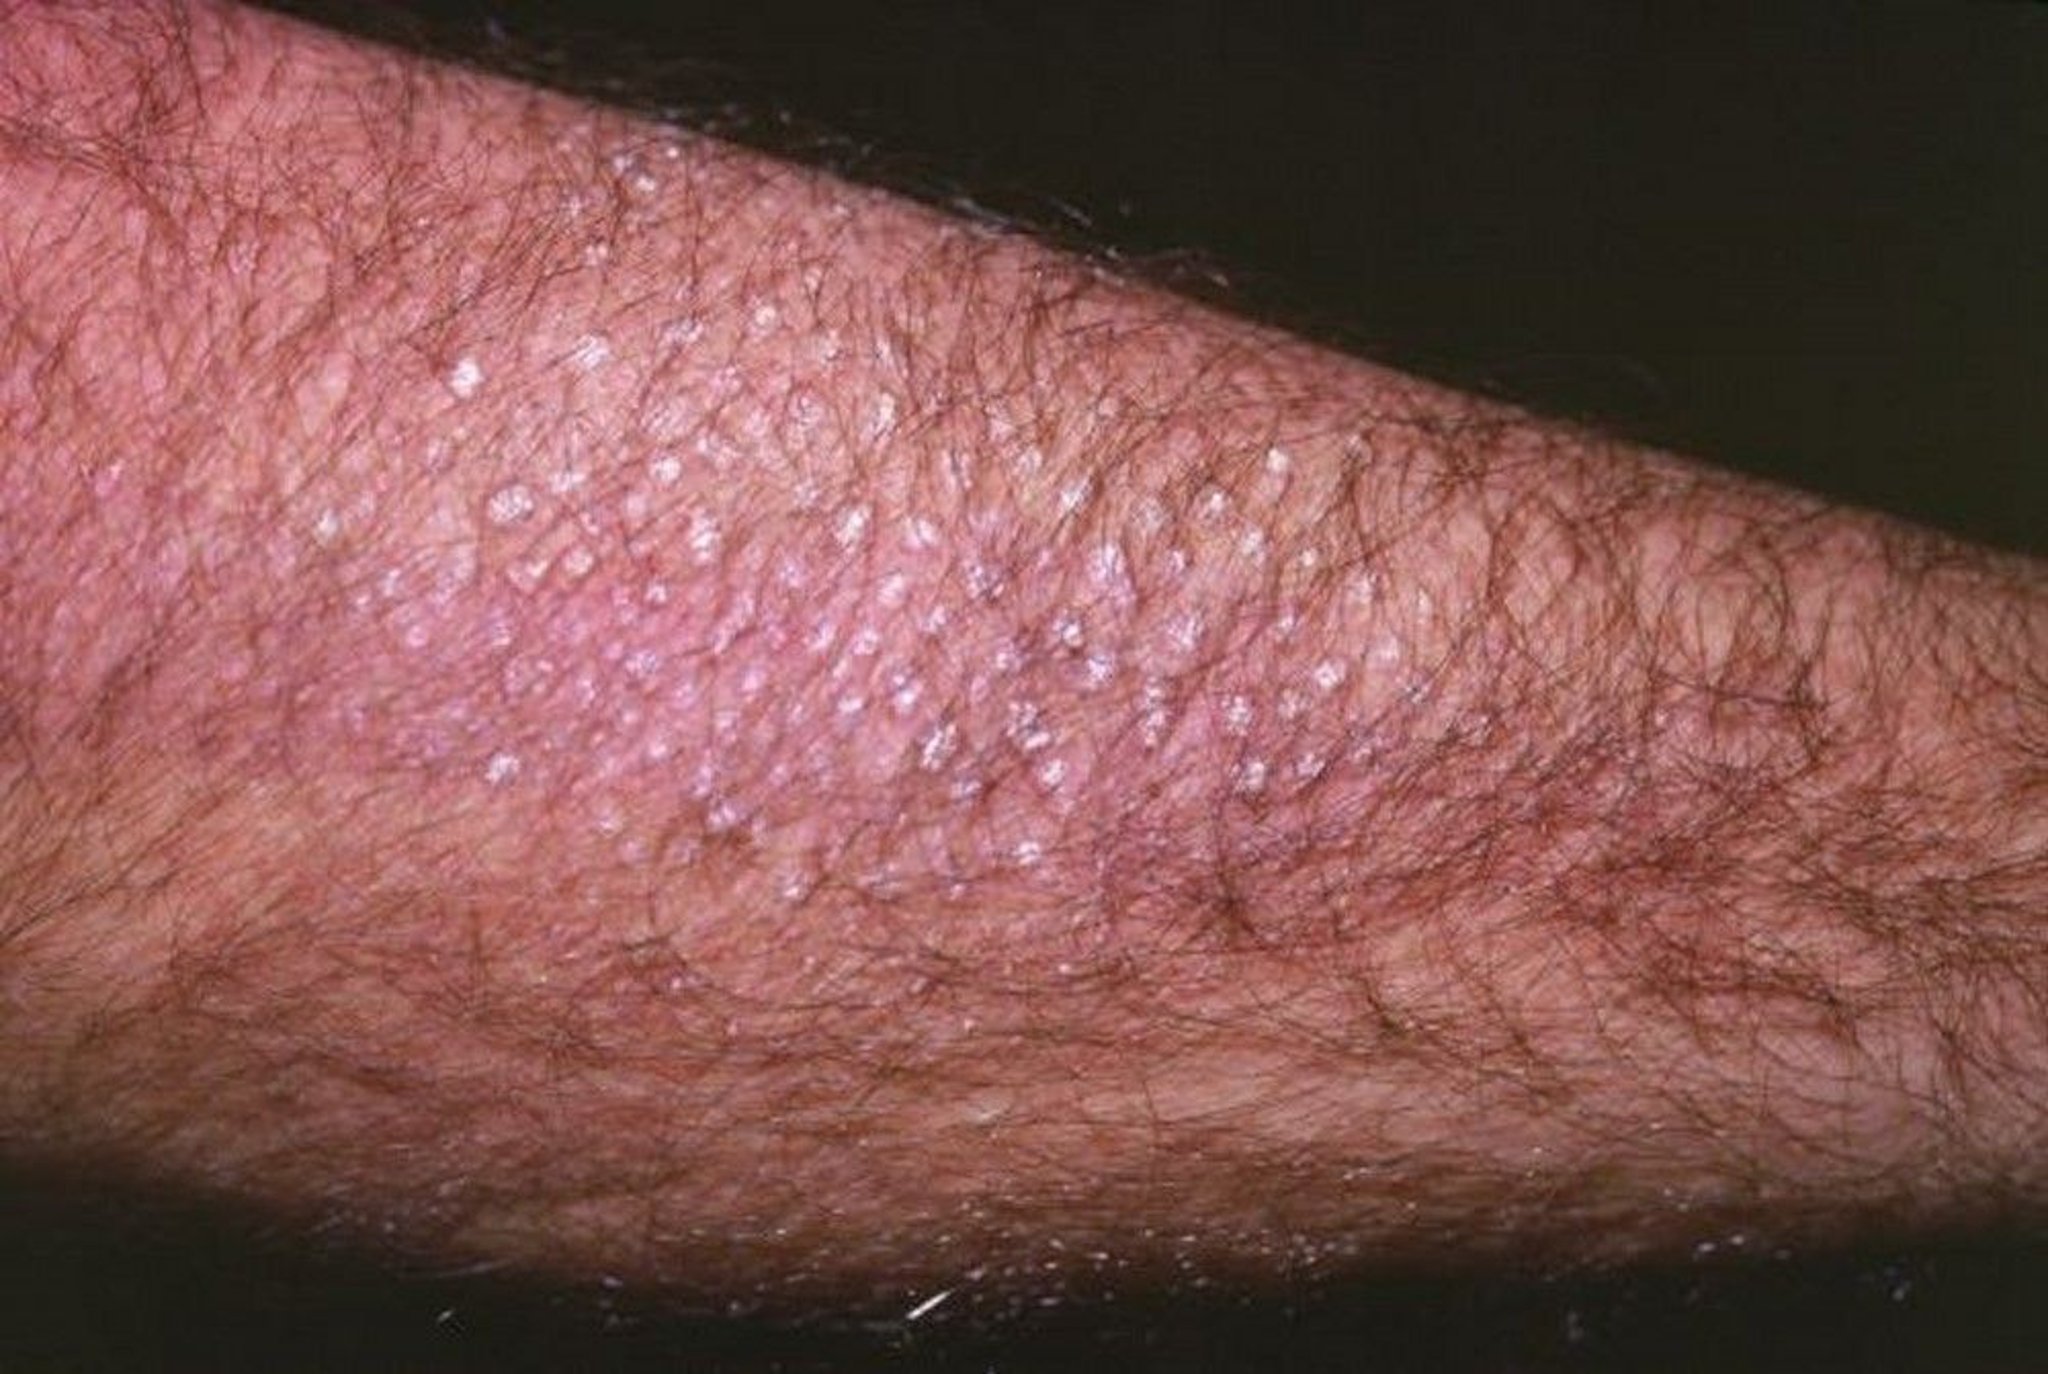 Cutaneous Lichen Amyloidosis (Arm)